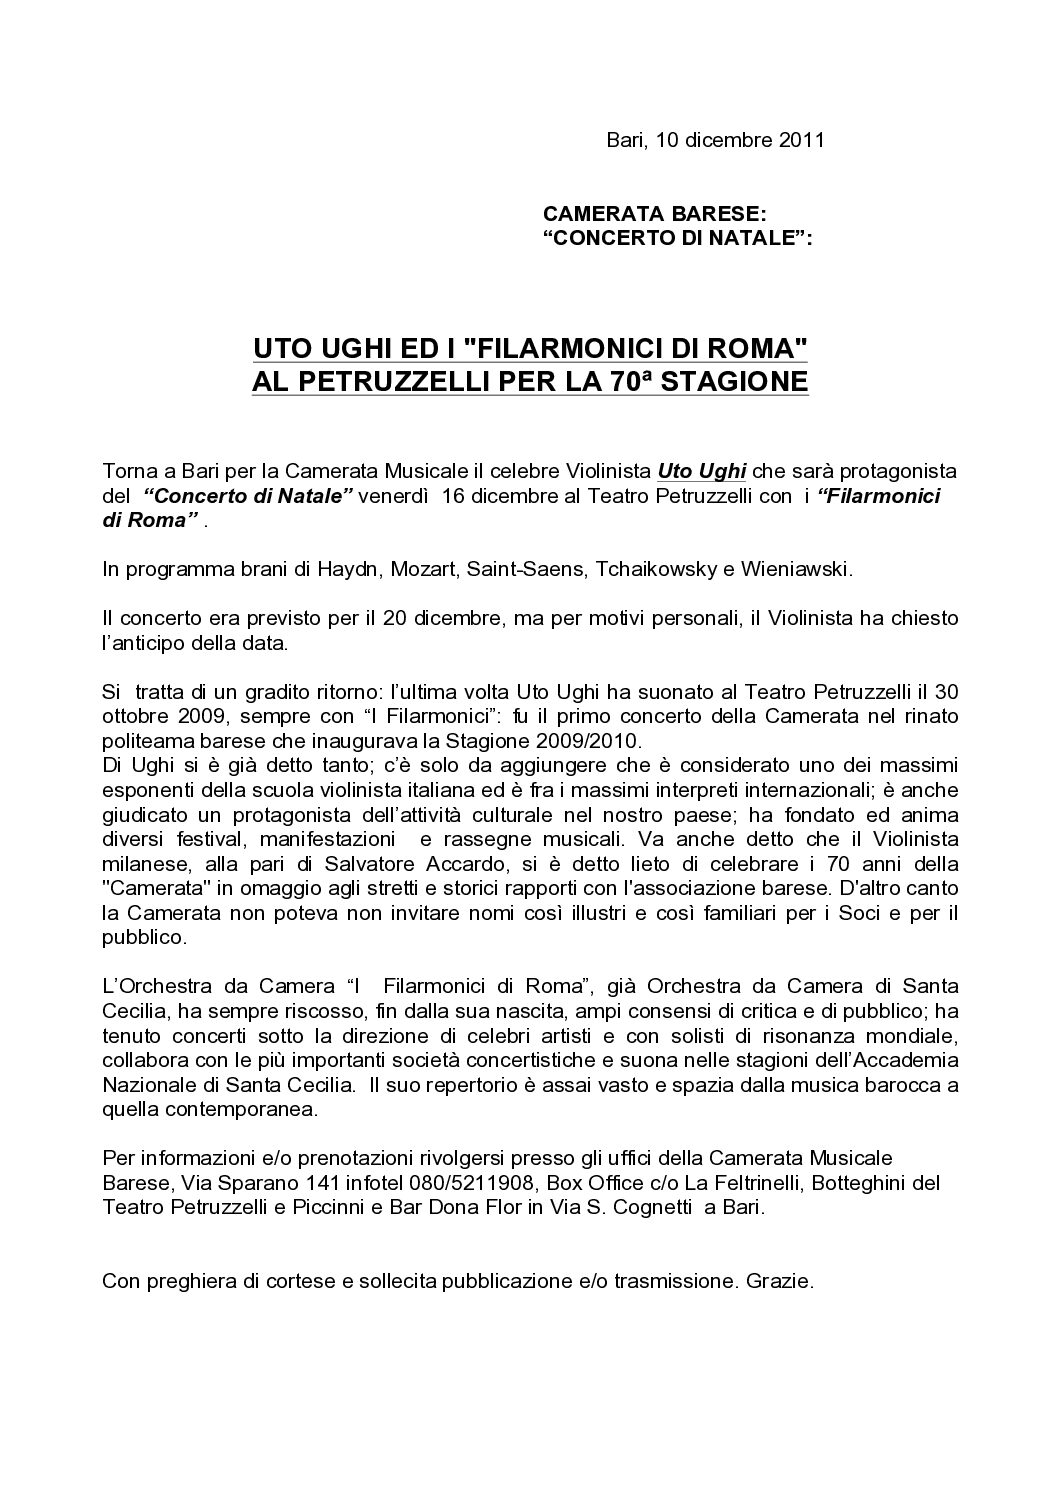 UTO UGHI ED I "FILARMONICI DI ROMA" AL PETRUZZELLI PER LA 70ª STAGIONE